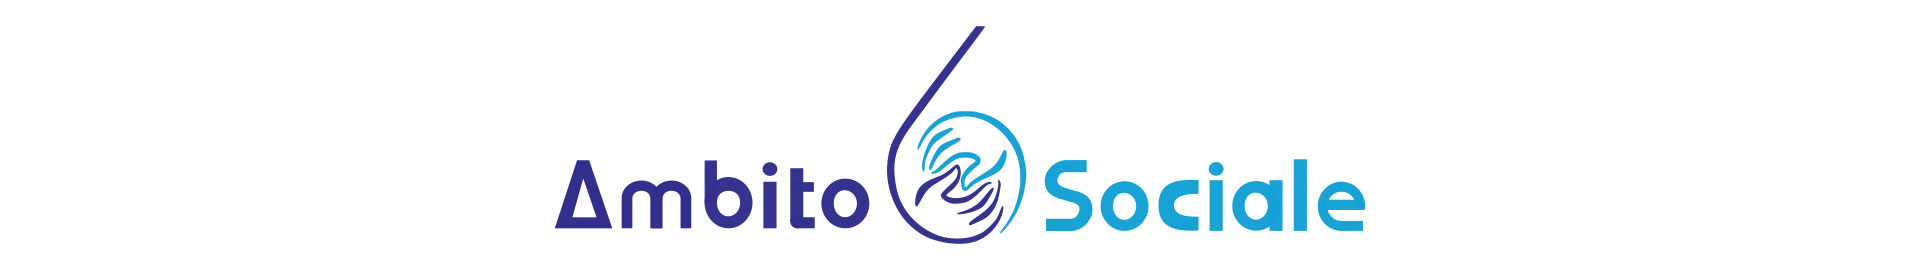 Logo-ambito-sociale-6-fano-cooss-partner